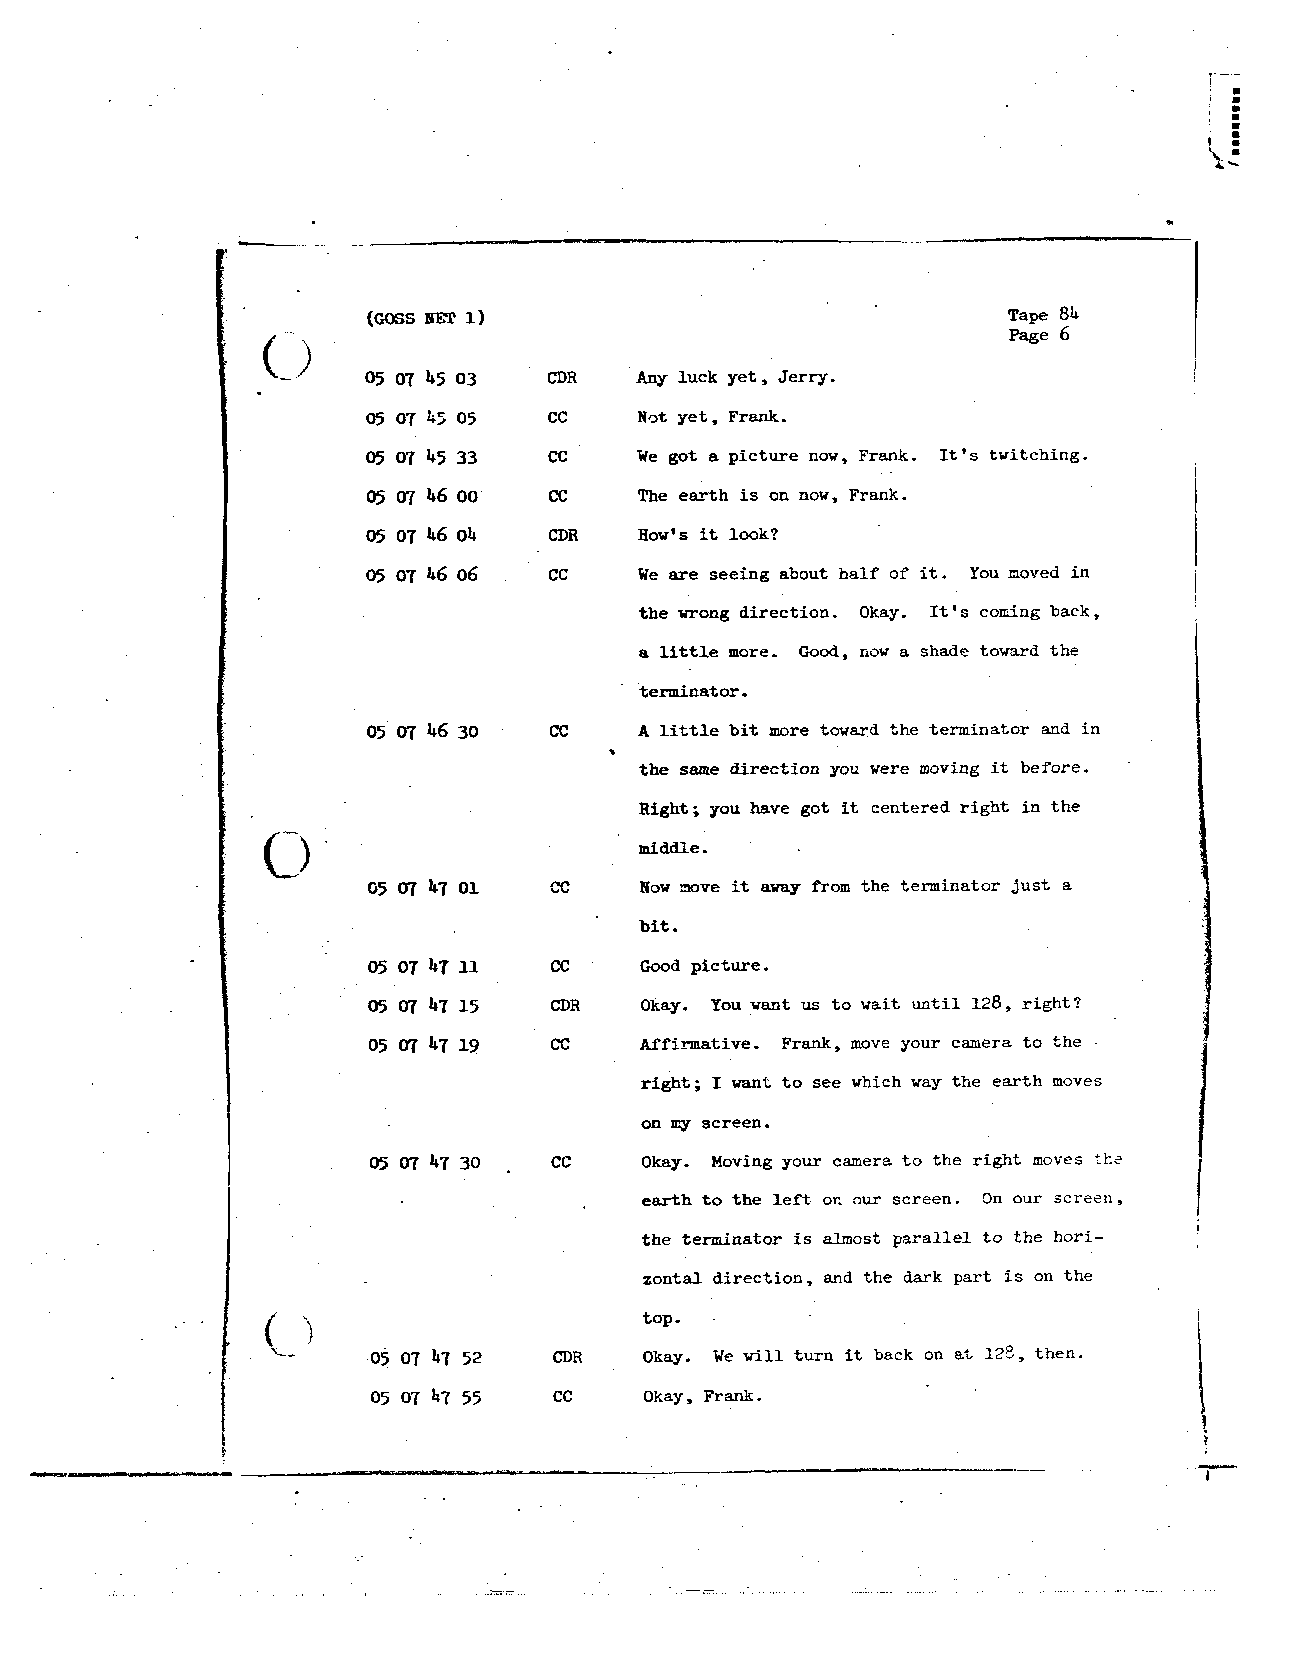 Page 692 of Apollo 8’s original transcript